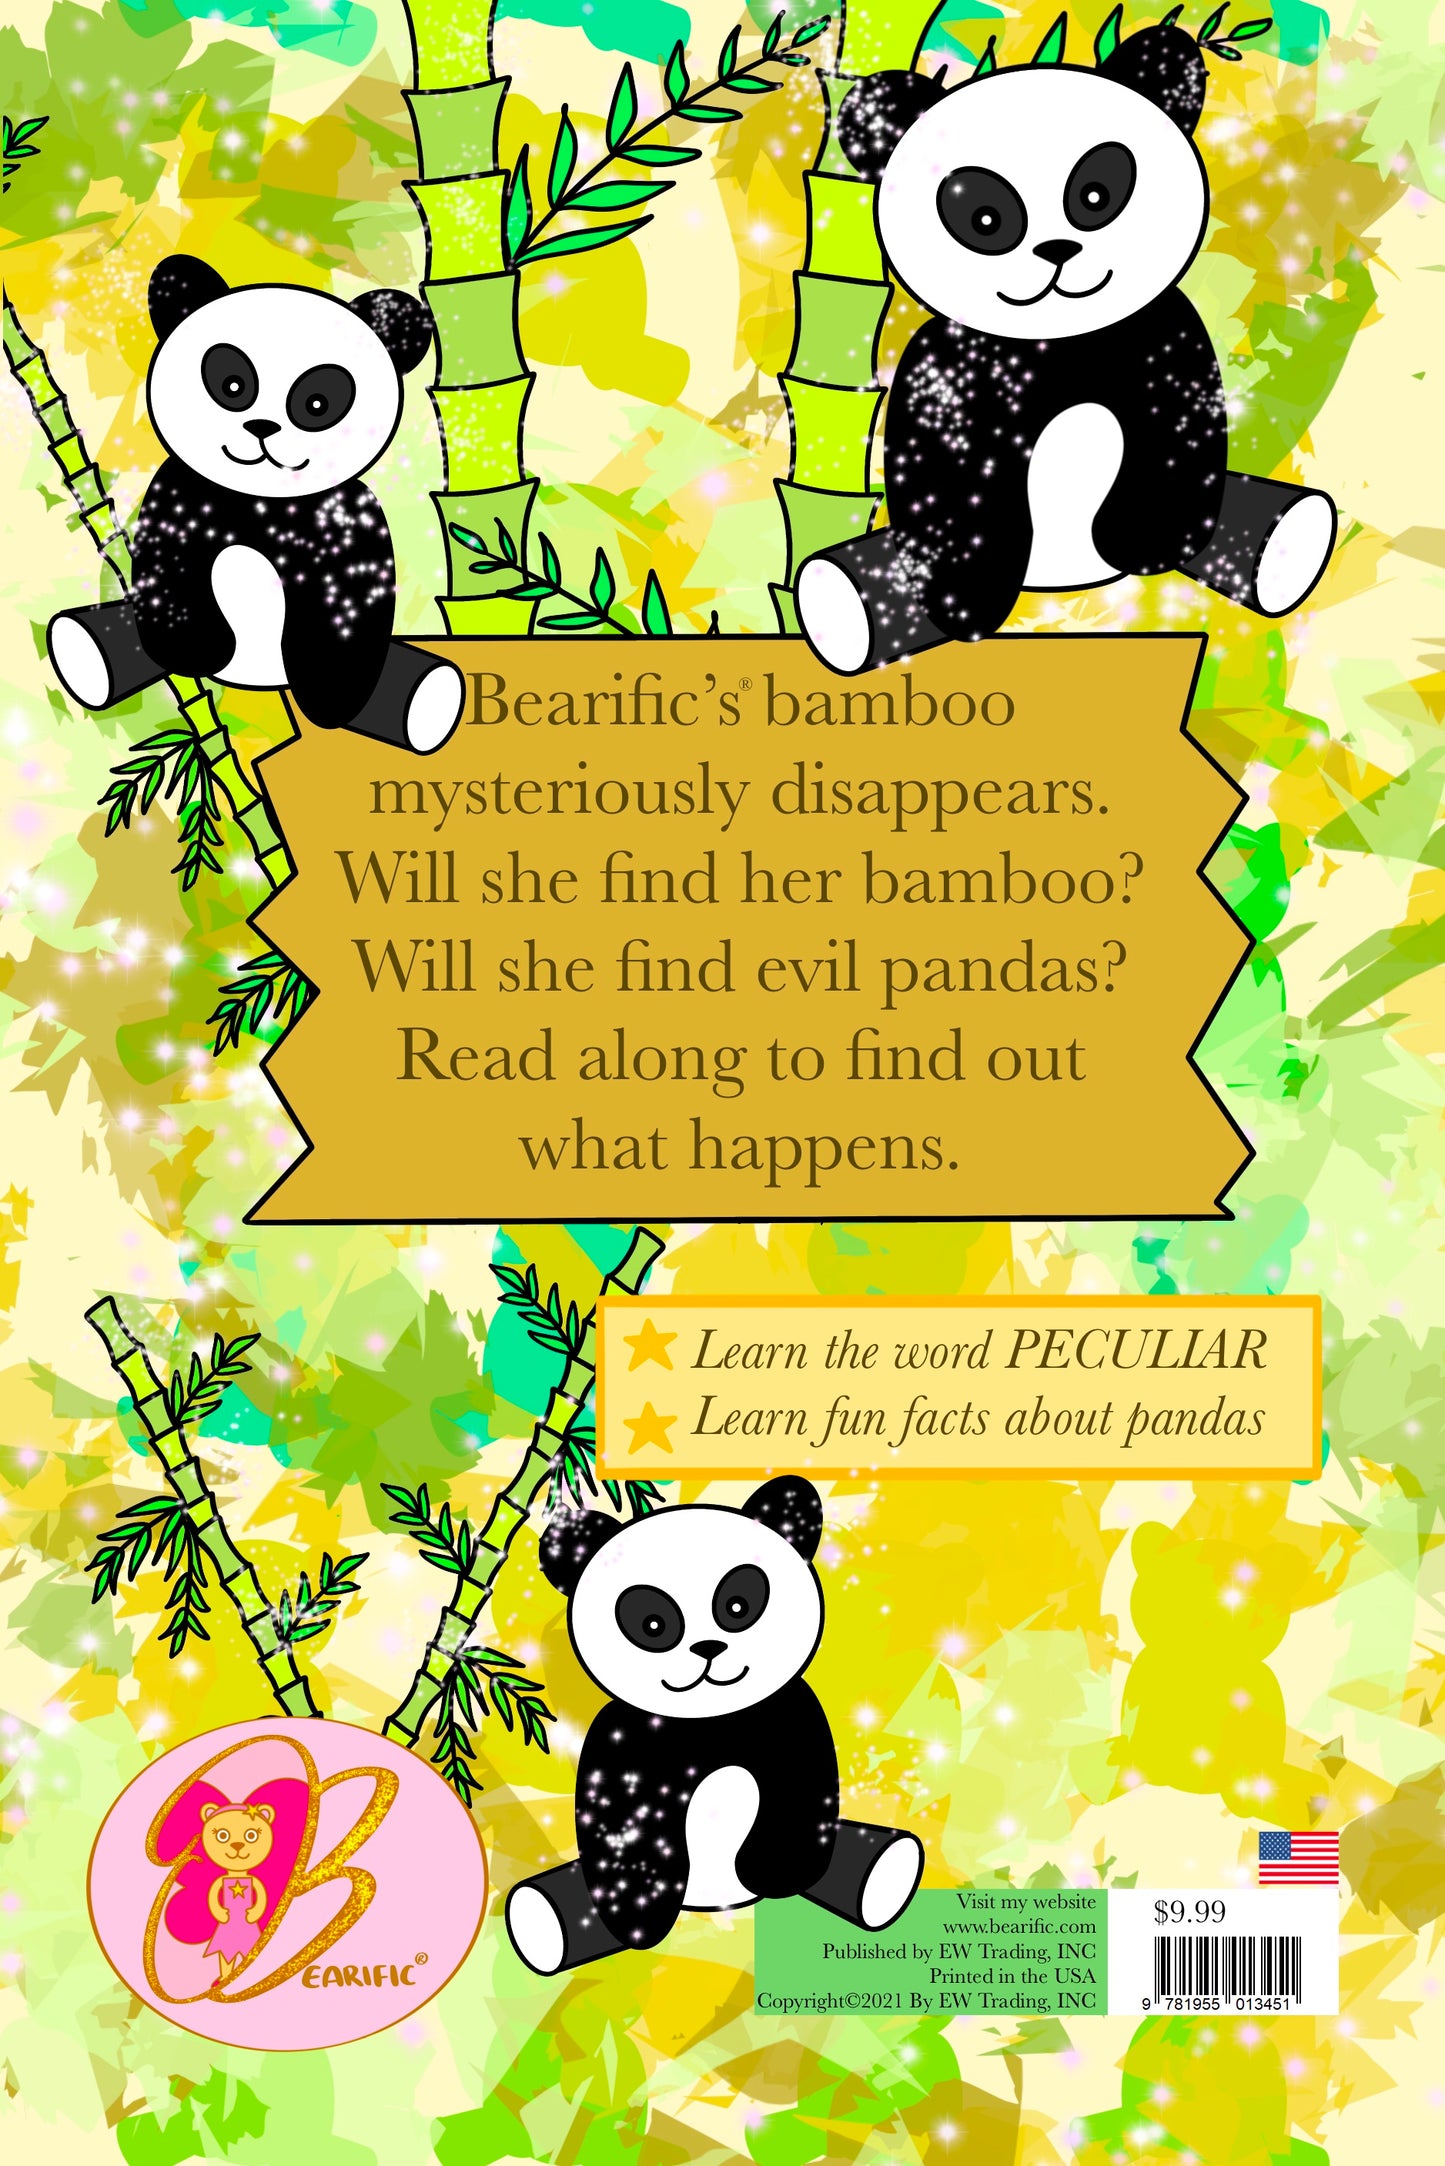 Bearific and the Peculiar Pandas